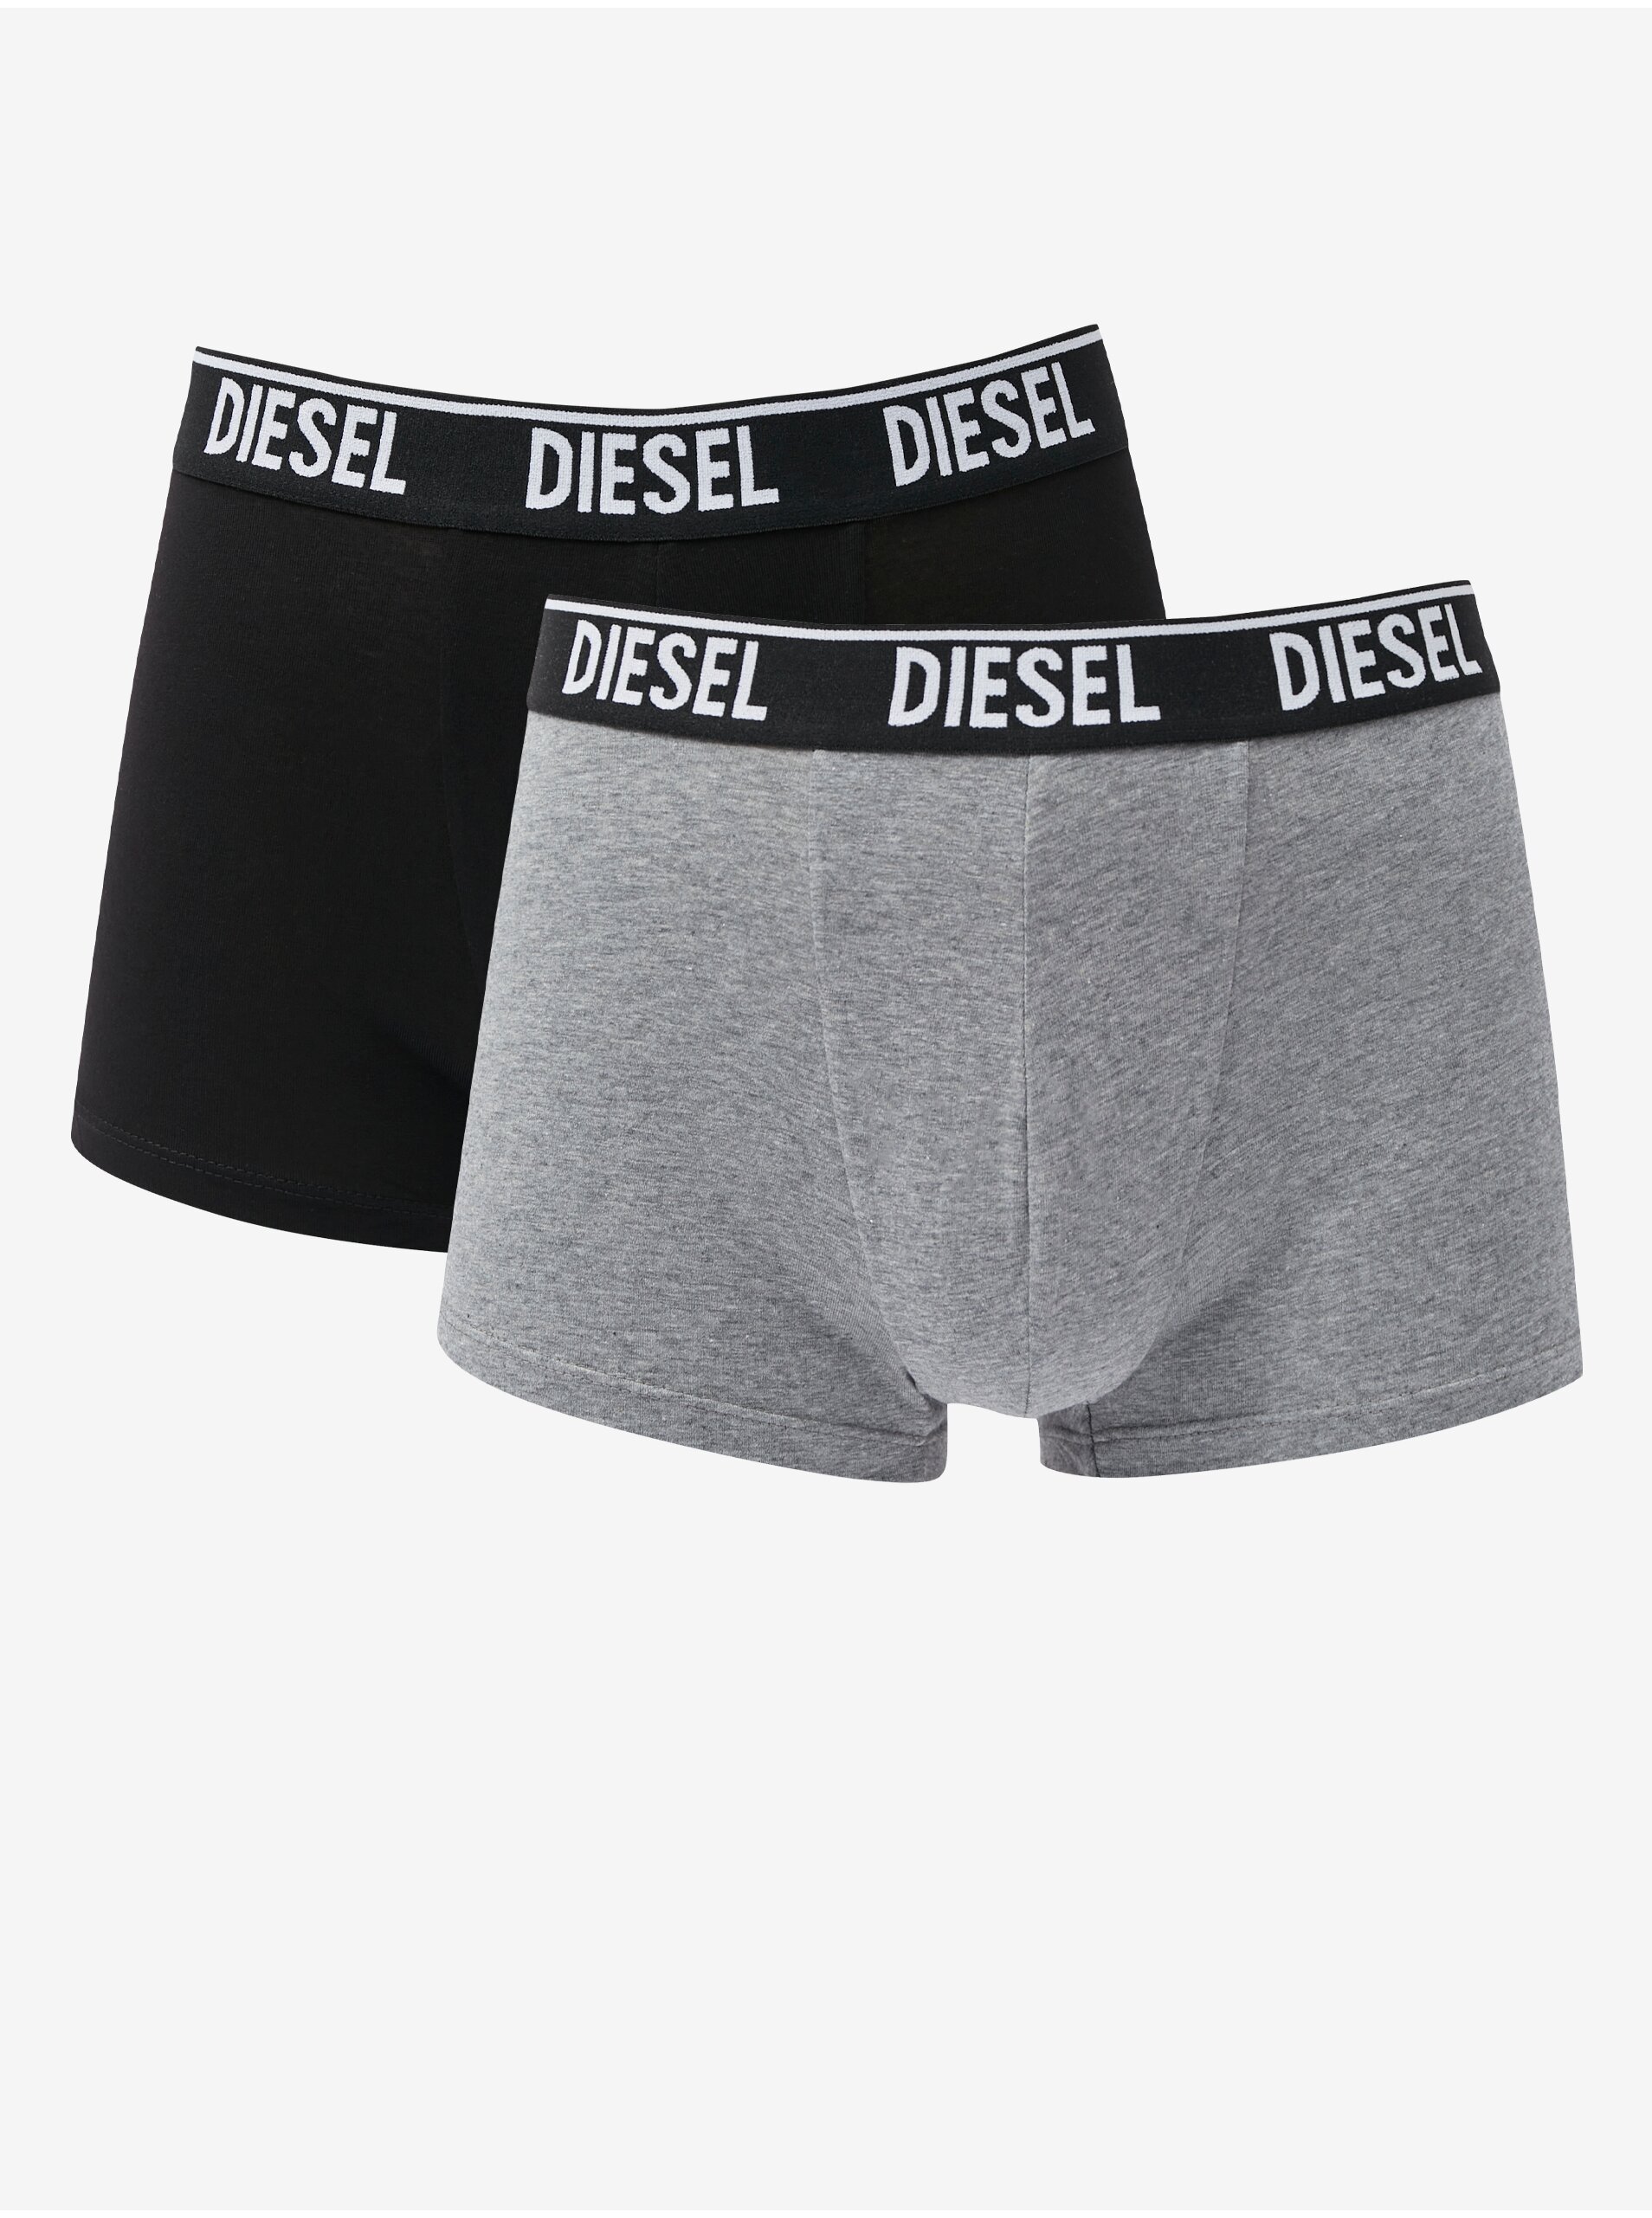 Lacno Súprava dvoch pánskych boxeriek v šedej a čiernej farbe Diesel